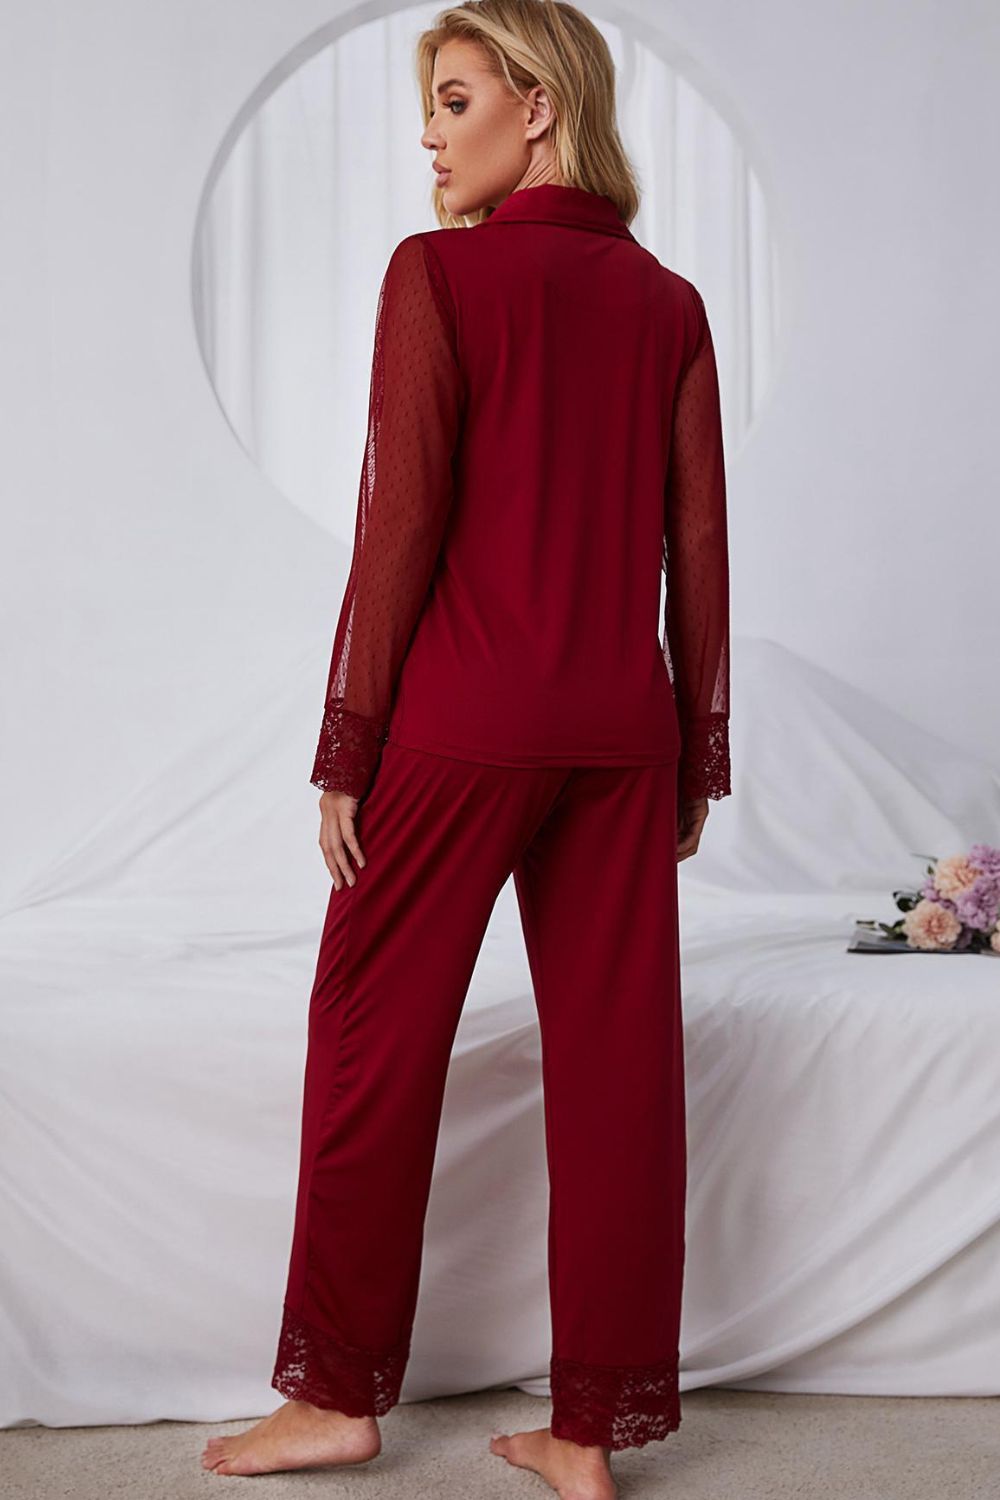 Women’s Spliced Lace Lapel Collar Pajama Set